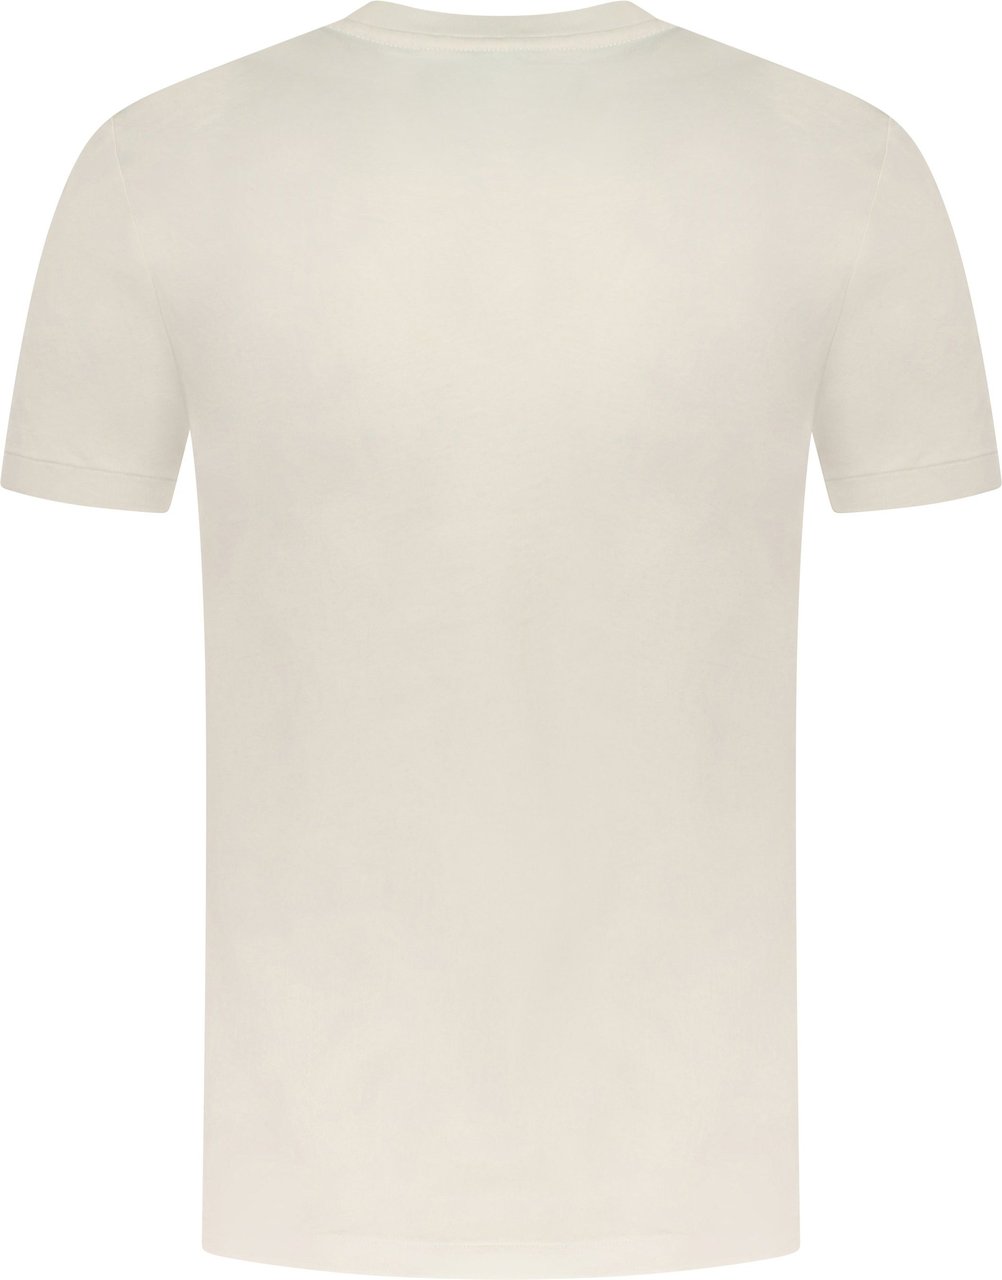 Ralph Lauren Polo T-shirt Wit Wit